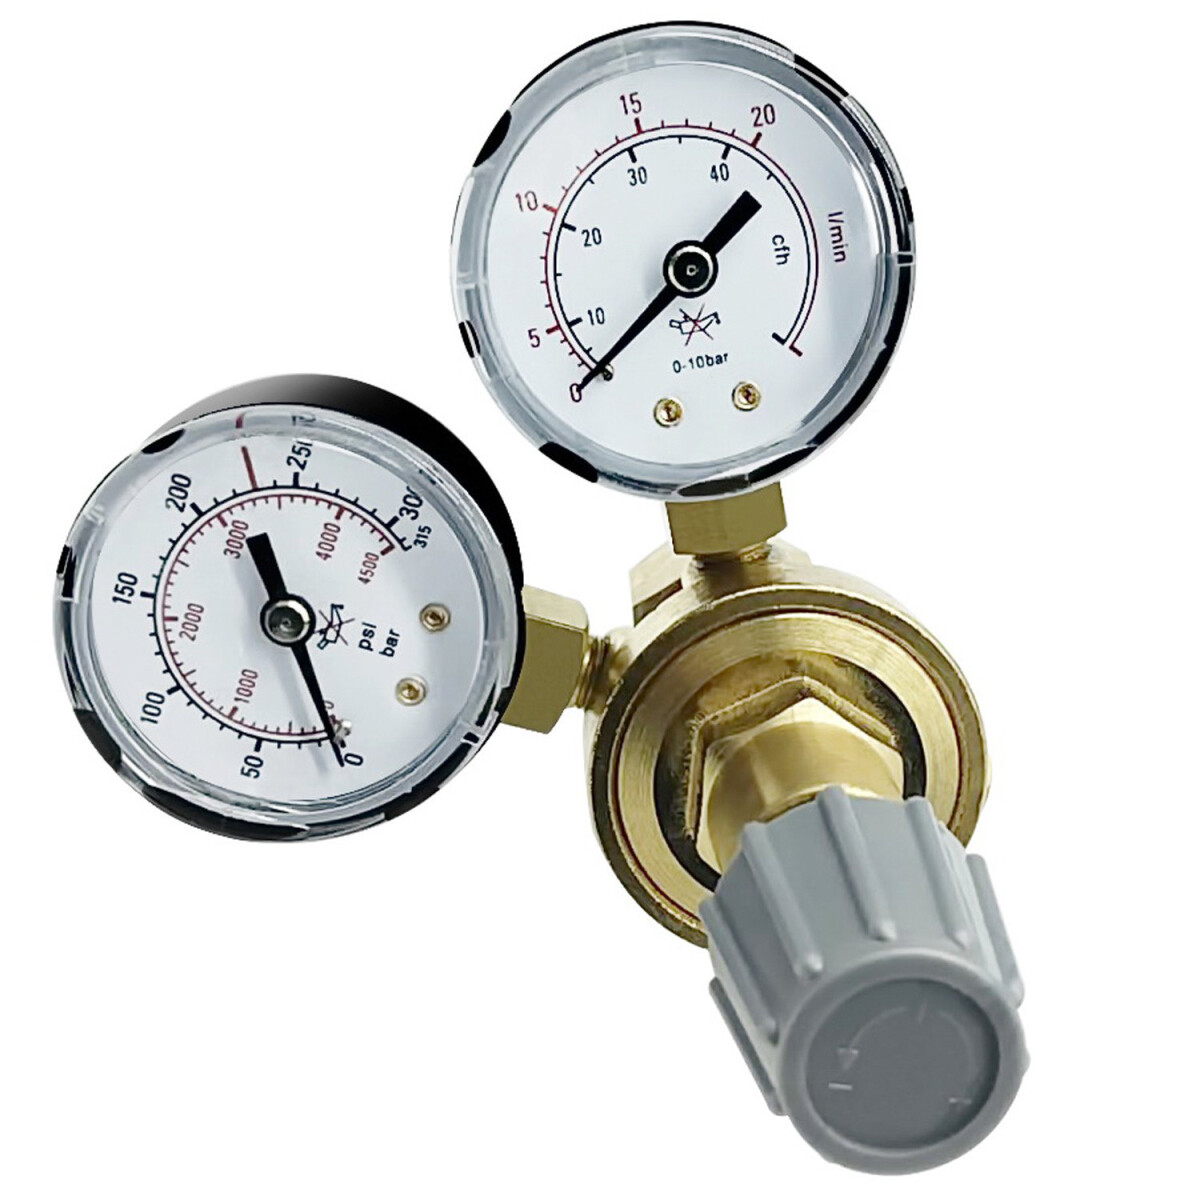 Druckminderer Druckregler Schutzgasschweigerät für viele Arten von Gasen für Argon/CO2 Schutzgas Schweißgerät 